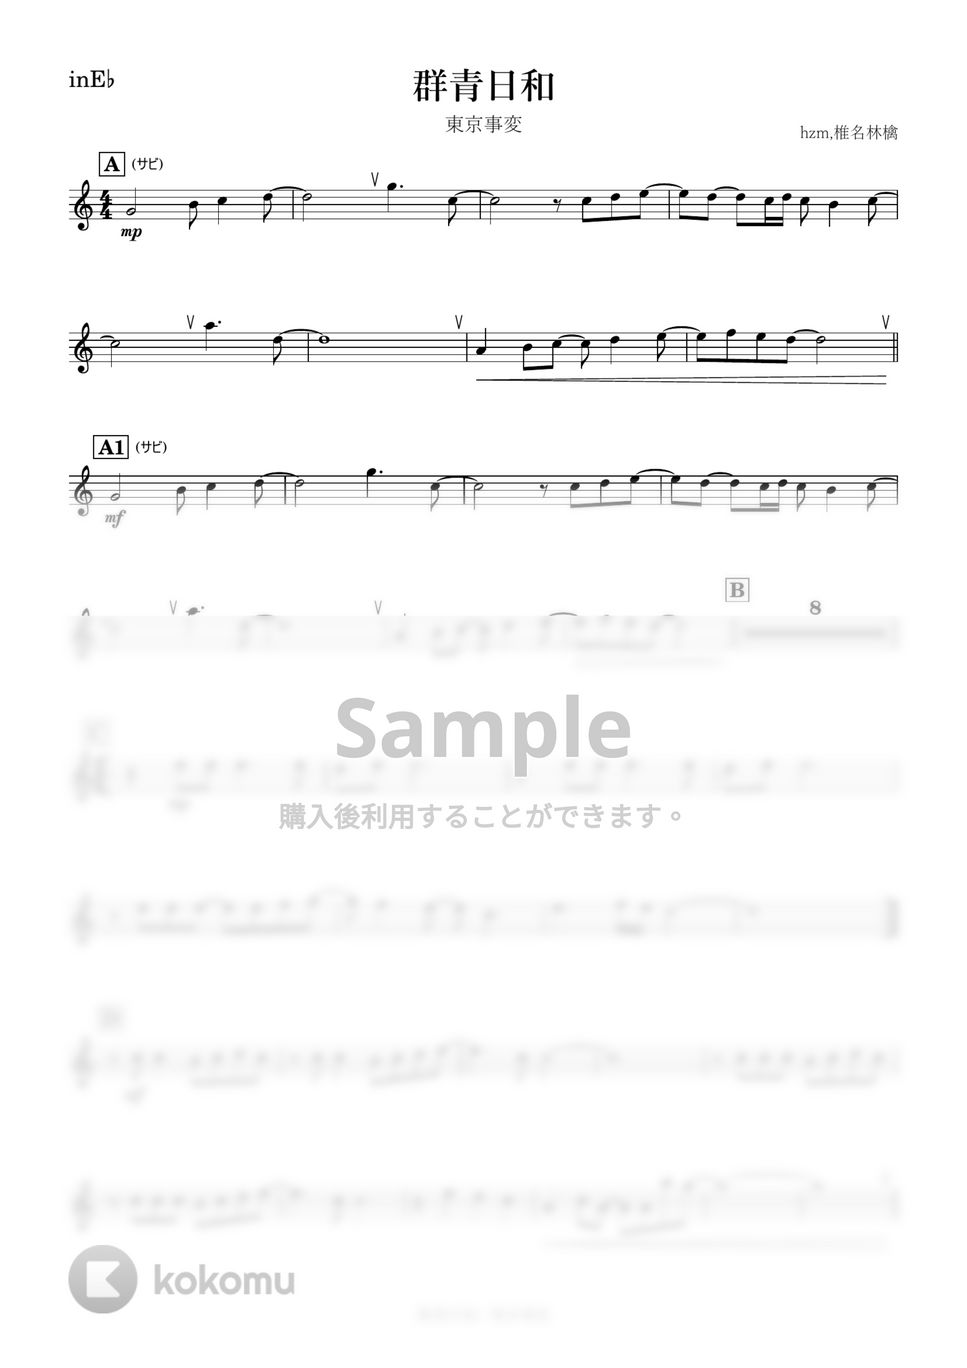 東京事変 - 群青日和 (E♭) by kanamusic